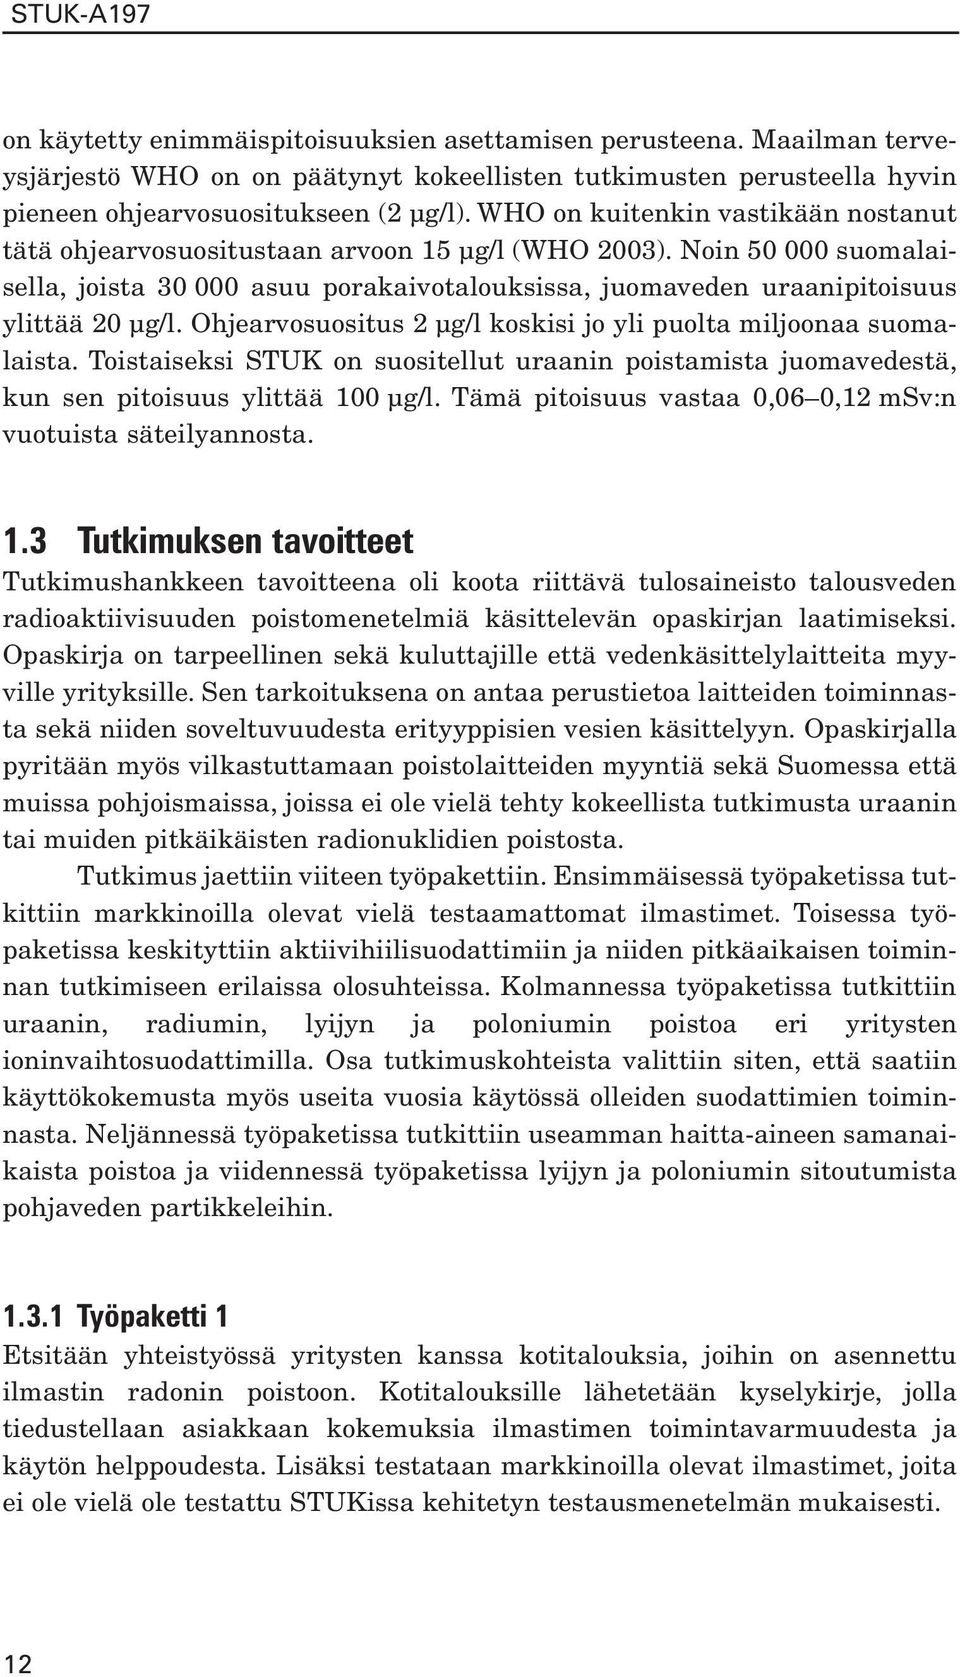 Ohjearvosuositus 2 µg/l koskisi jo yli puolta miljoonaa suomalaista. Toistaiseksi STUK on suositellut uraanin poistamista juomavedestä, kun sen pitoisuus ylittää 100 µg/l.